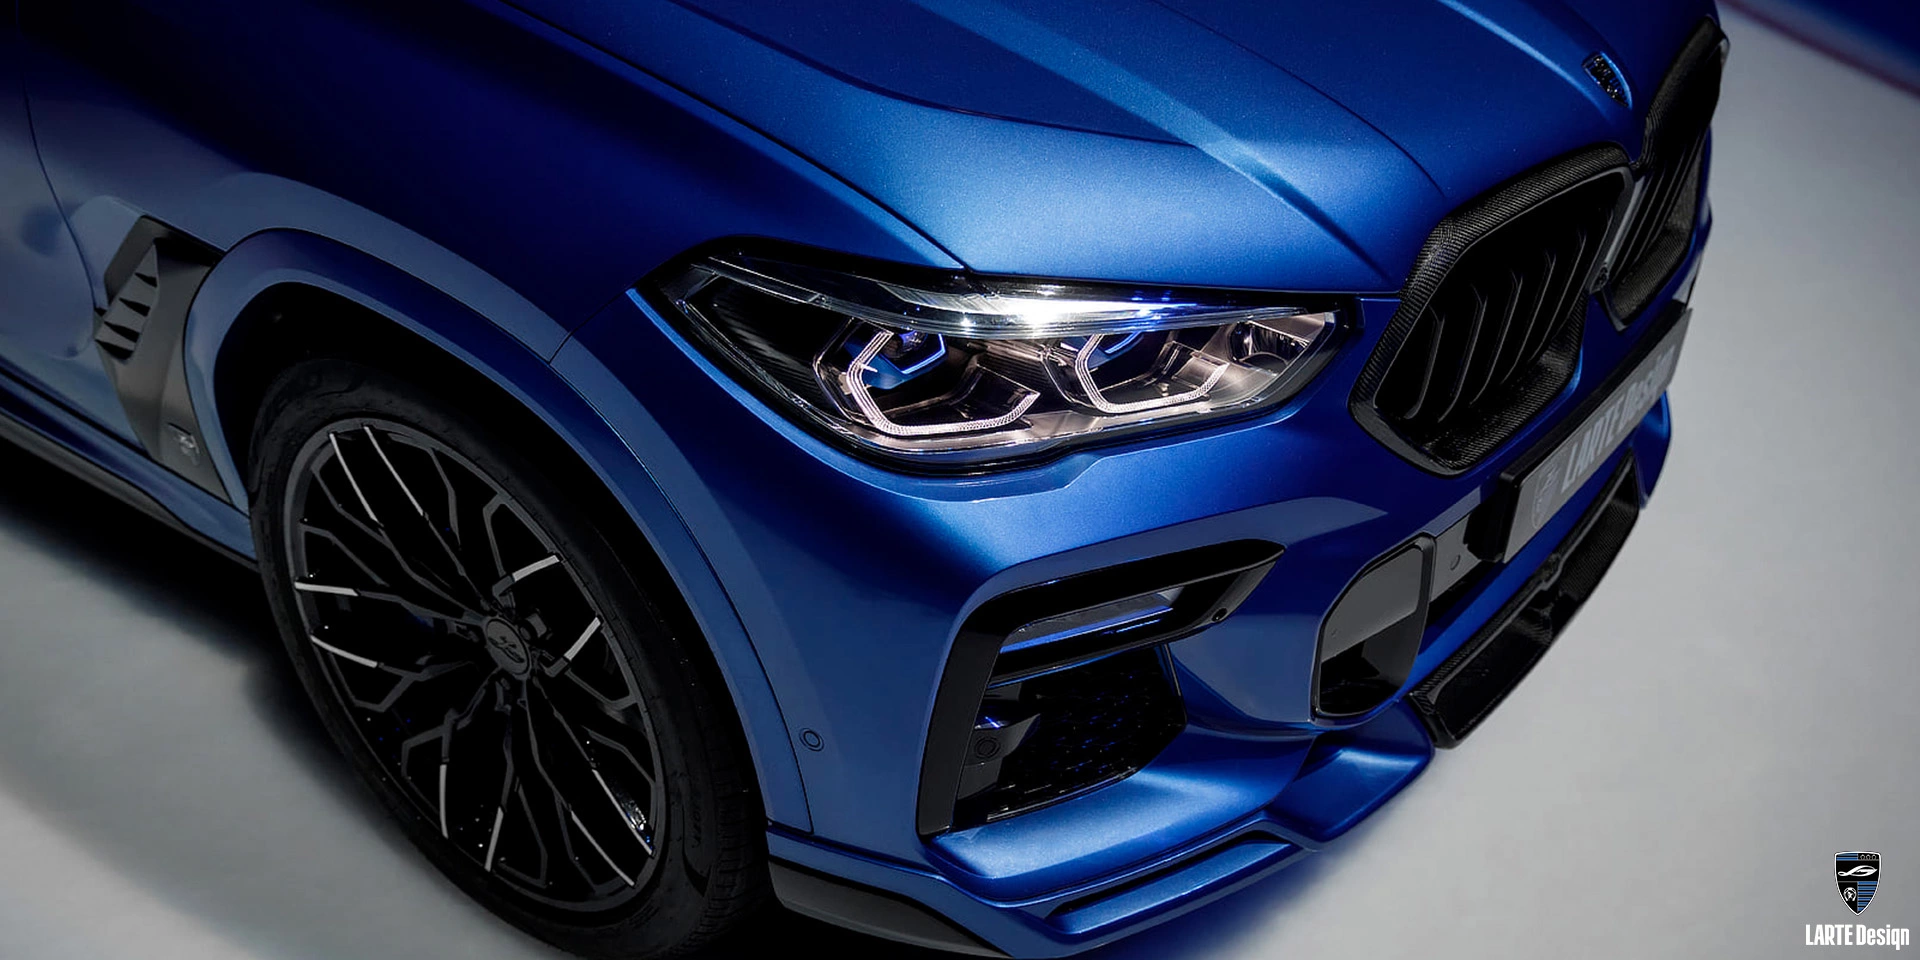 Bestellen Sie exklusive aerodynamische Teile aus Karbonfaser für den LARTE Performance BMW X6 M Sport G06 in Phytonic Blue Metallic